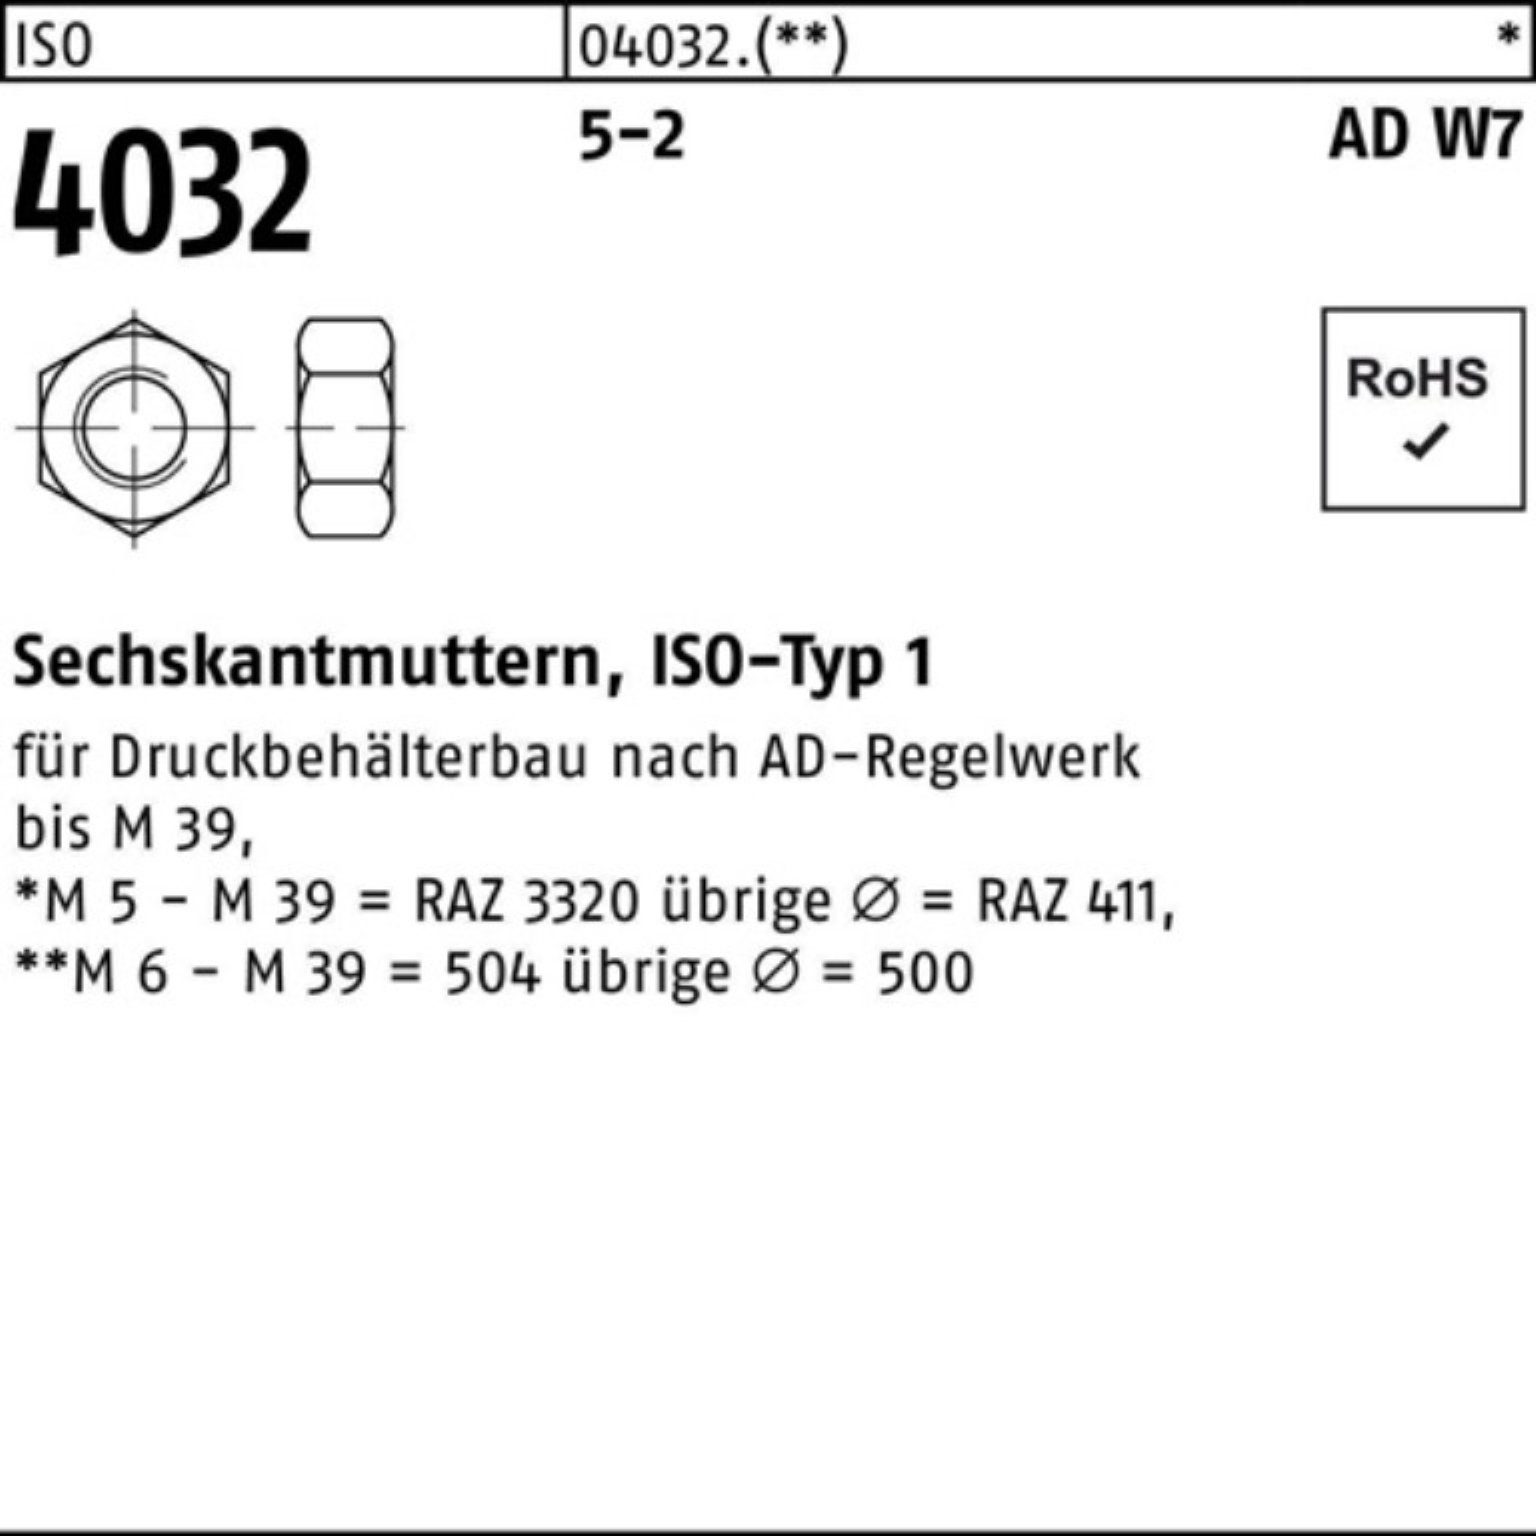 Bufab Muttern 100er Pack Sechskantmutter ISO 4032 M33 5-2 AD W7 10 Stück ISO 4032 5